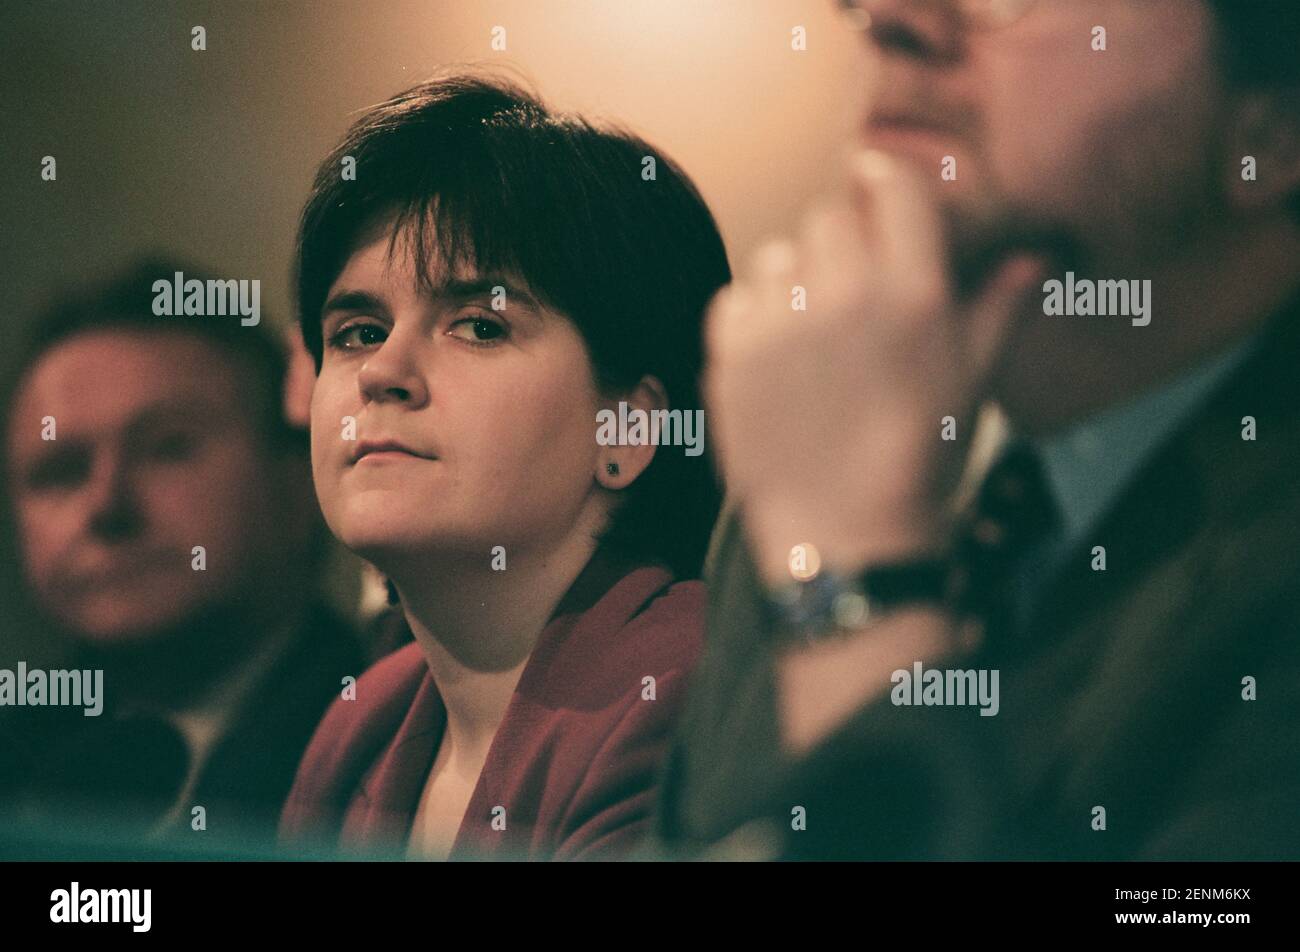 Nicola Sturgeon von der Scottish National Party hörte ihrem Parteichef Alex Salmond beim Start des SNP-Manifests 1999 für den Holyrood-Wahlkampf in Edinburgh, Schottland, zu. Frau Sturgeon wurde 1999 in das neu geschaffene schottische parlament gewählt und diente anschließend als stellvertretende erste Ministerin des Landes unter Alex Salmond MSP und dann als erste Ministerin. Zur Zeit der Wahl 1999 arbeitete sie als Rechtsanwältin im Drumchapel Law and Money Advice Center in Glasgow. Stockfoto